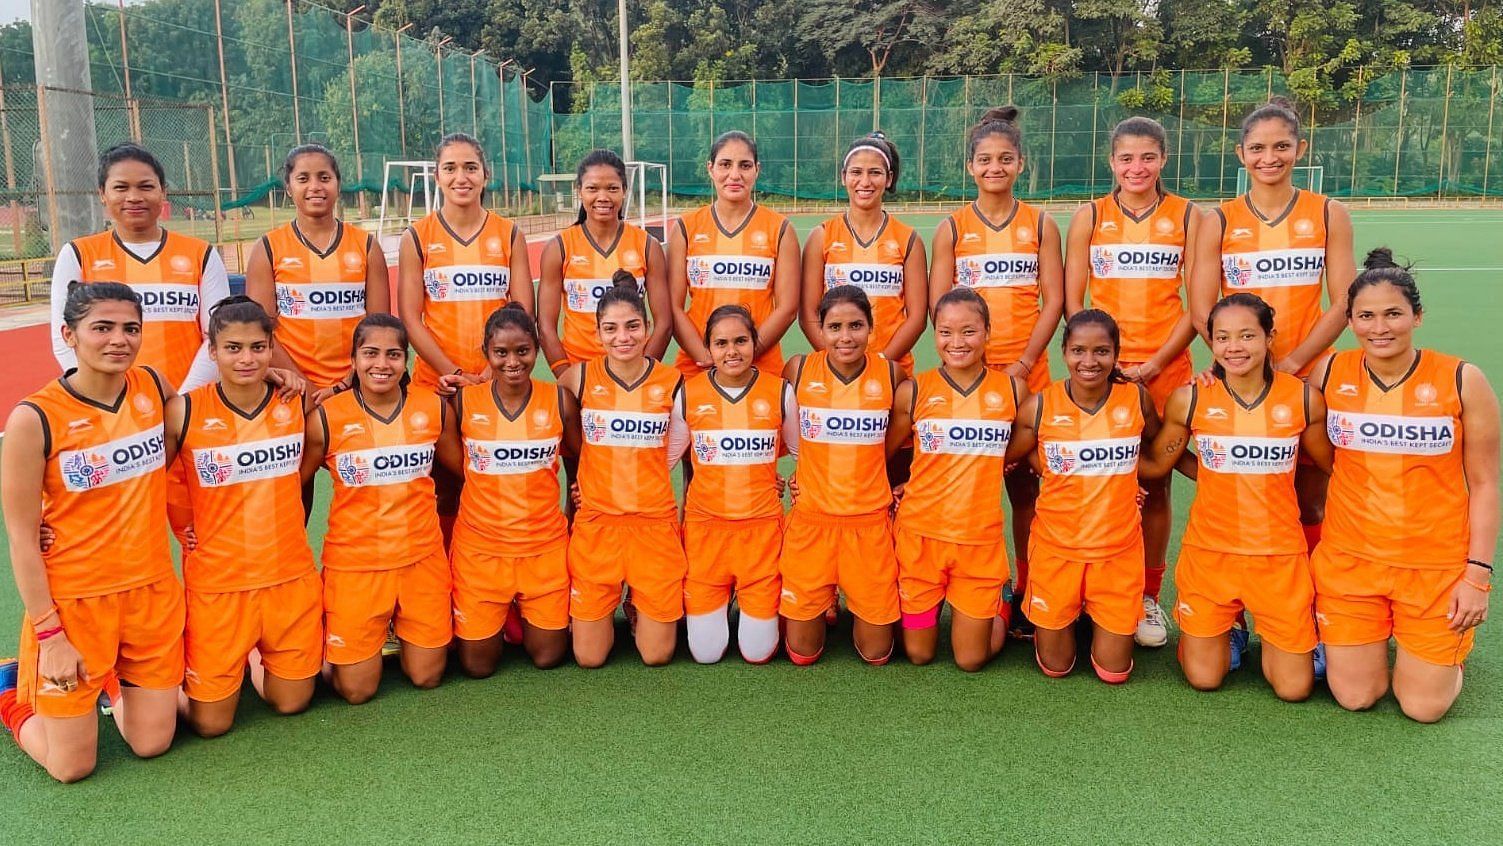 भारतीय महिला टीम ने तीसरी बार एशिया कप हॉकी का कांस्य पदक अपने नाम किया।